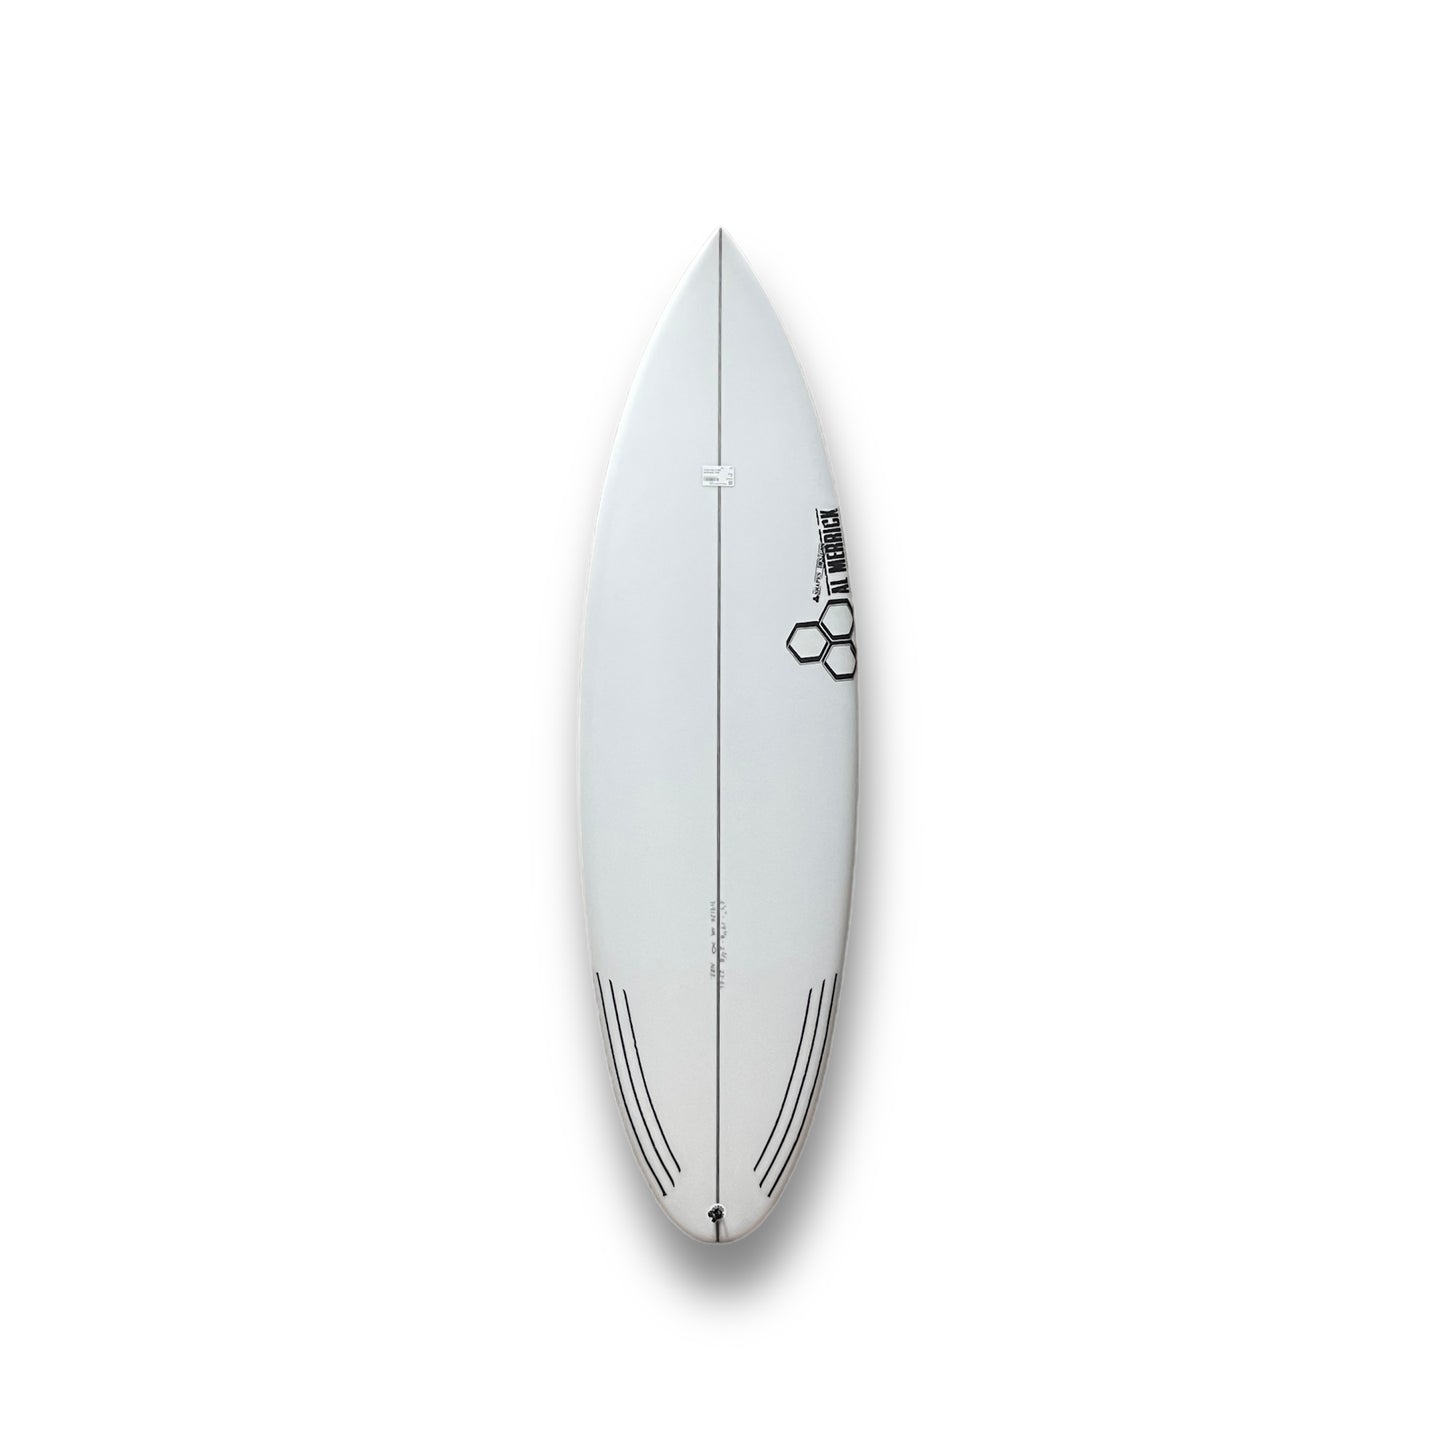 CHANNEL ISLANDS NECKBEARD 3 5'7" SURFBOARD